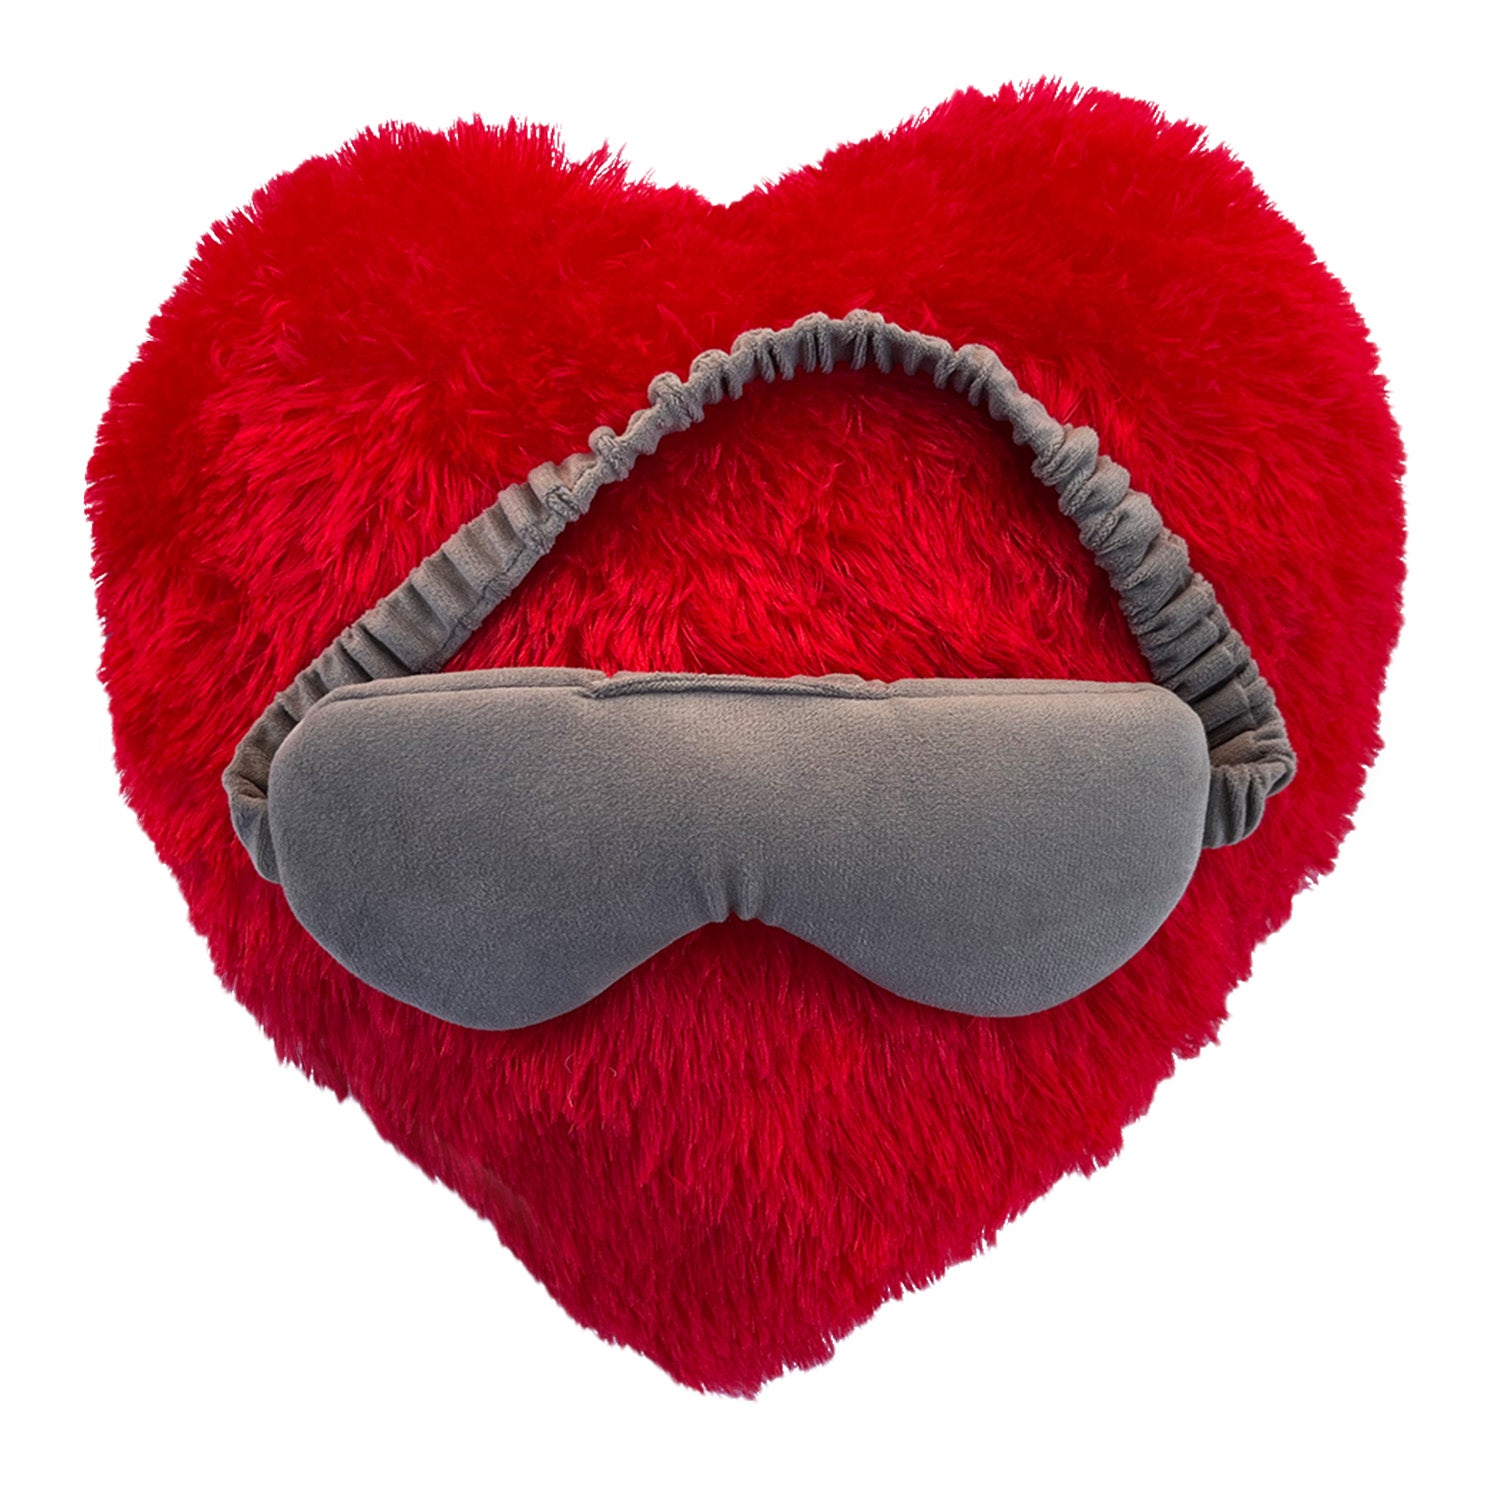 Heart Shape Pillows & Sleeping Eye Mask- Combo